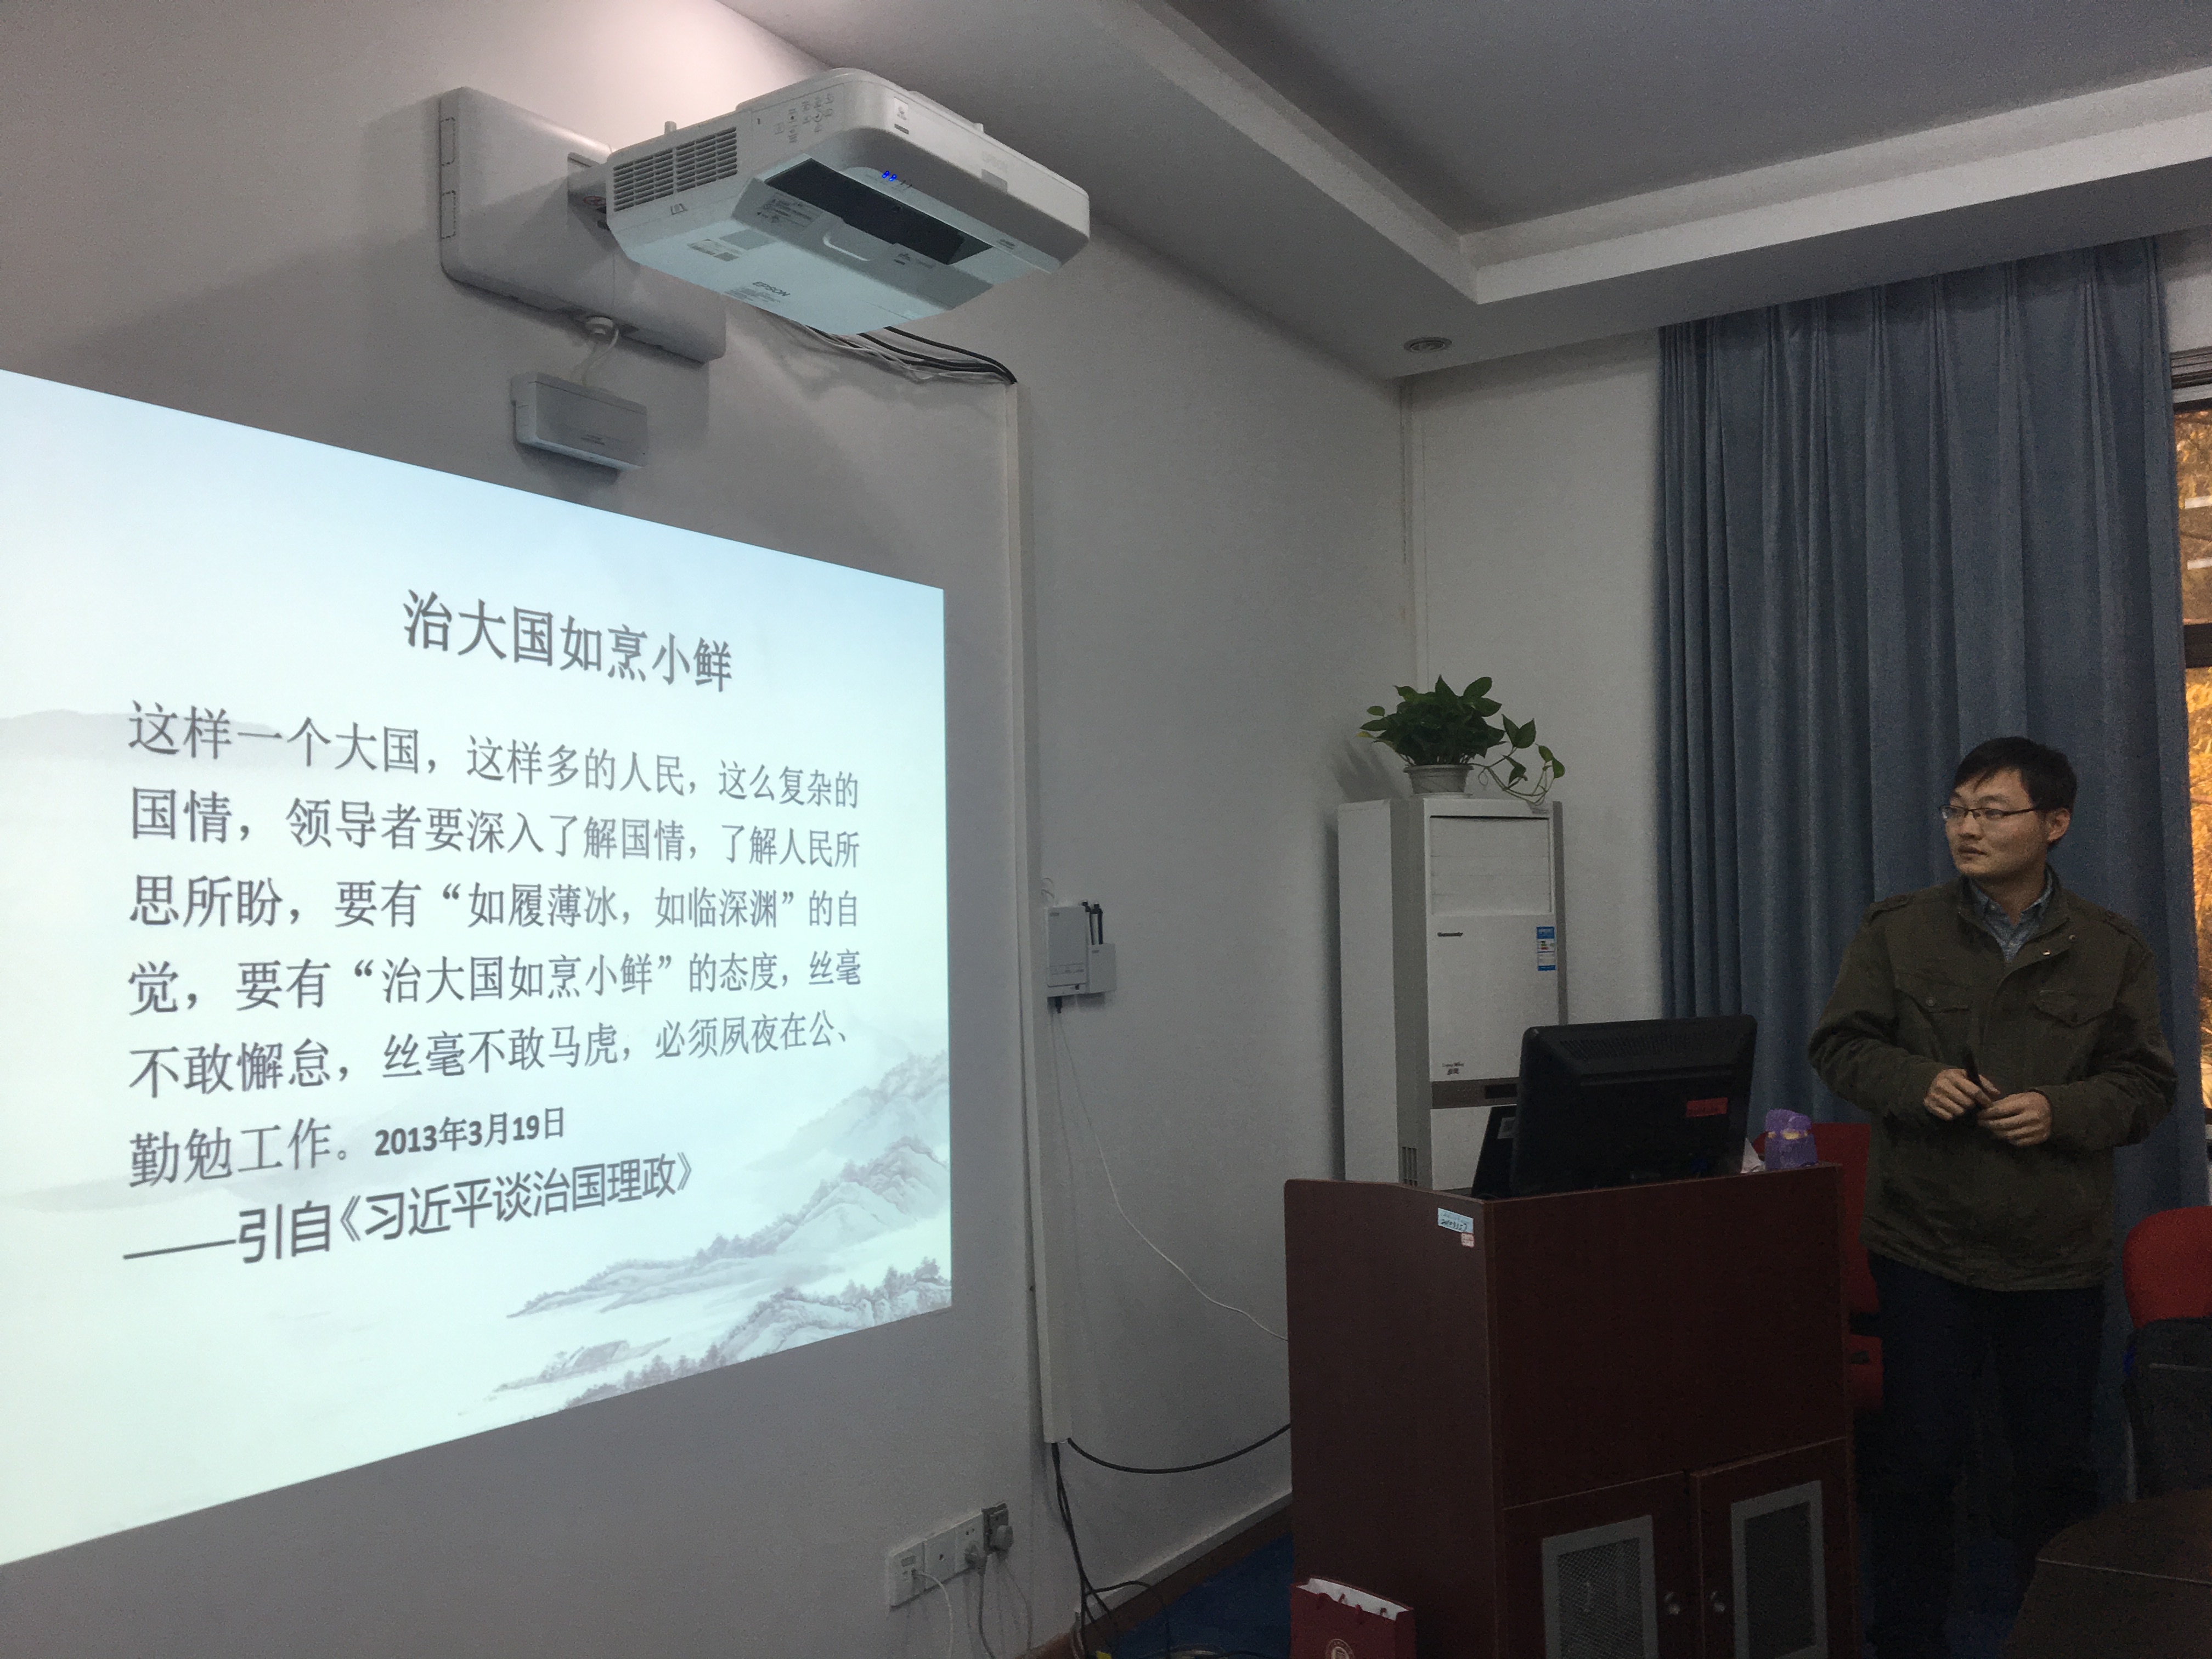 刘永老师讲解习总书记讲话中的“治大国如烹小鲜”